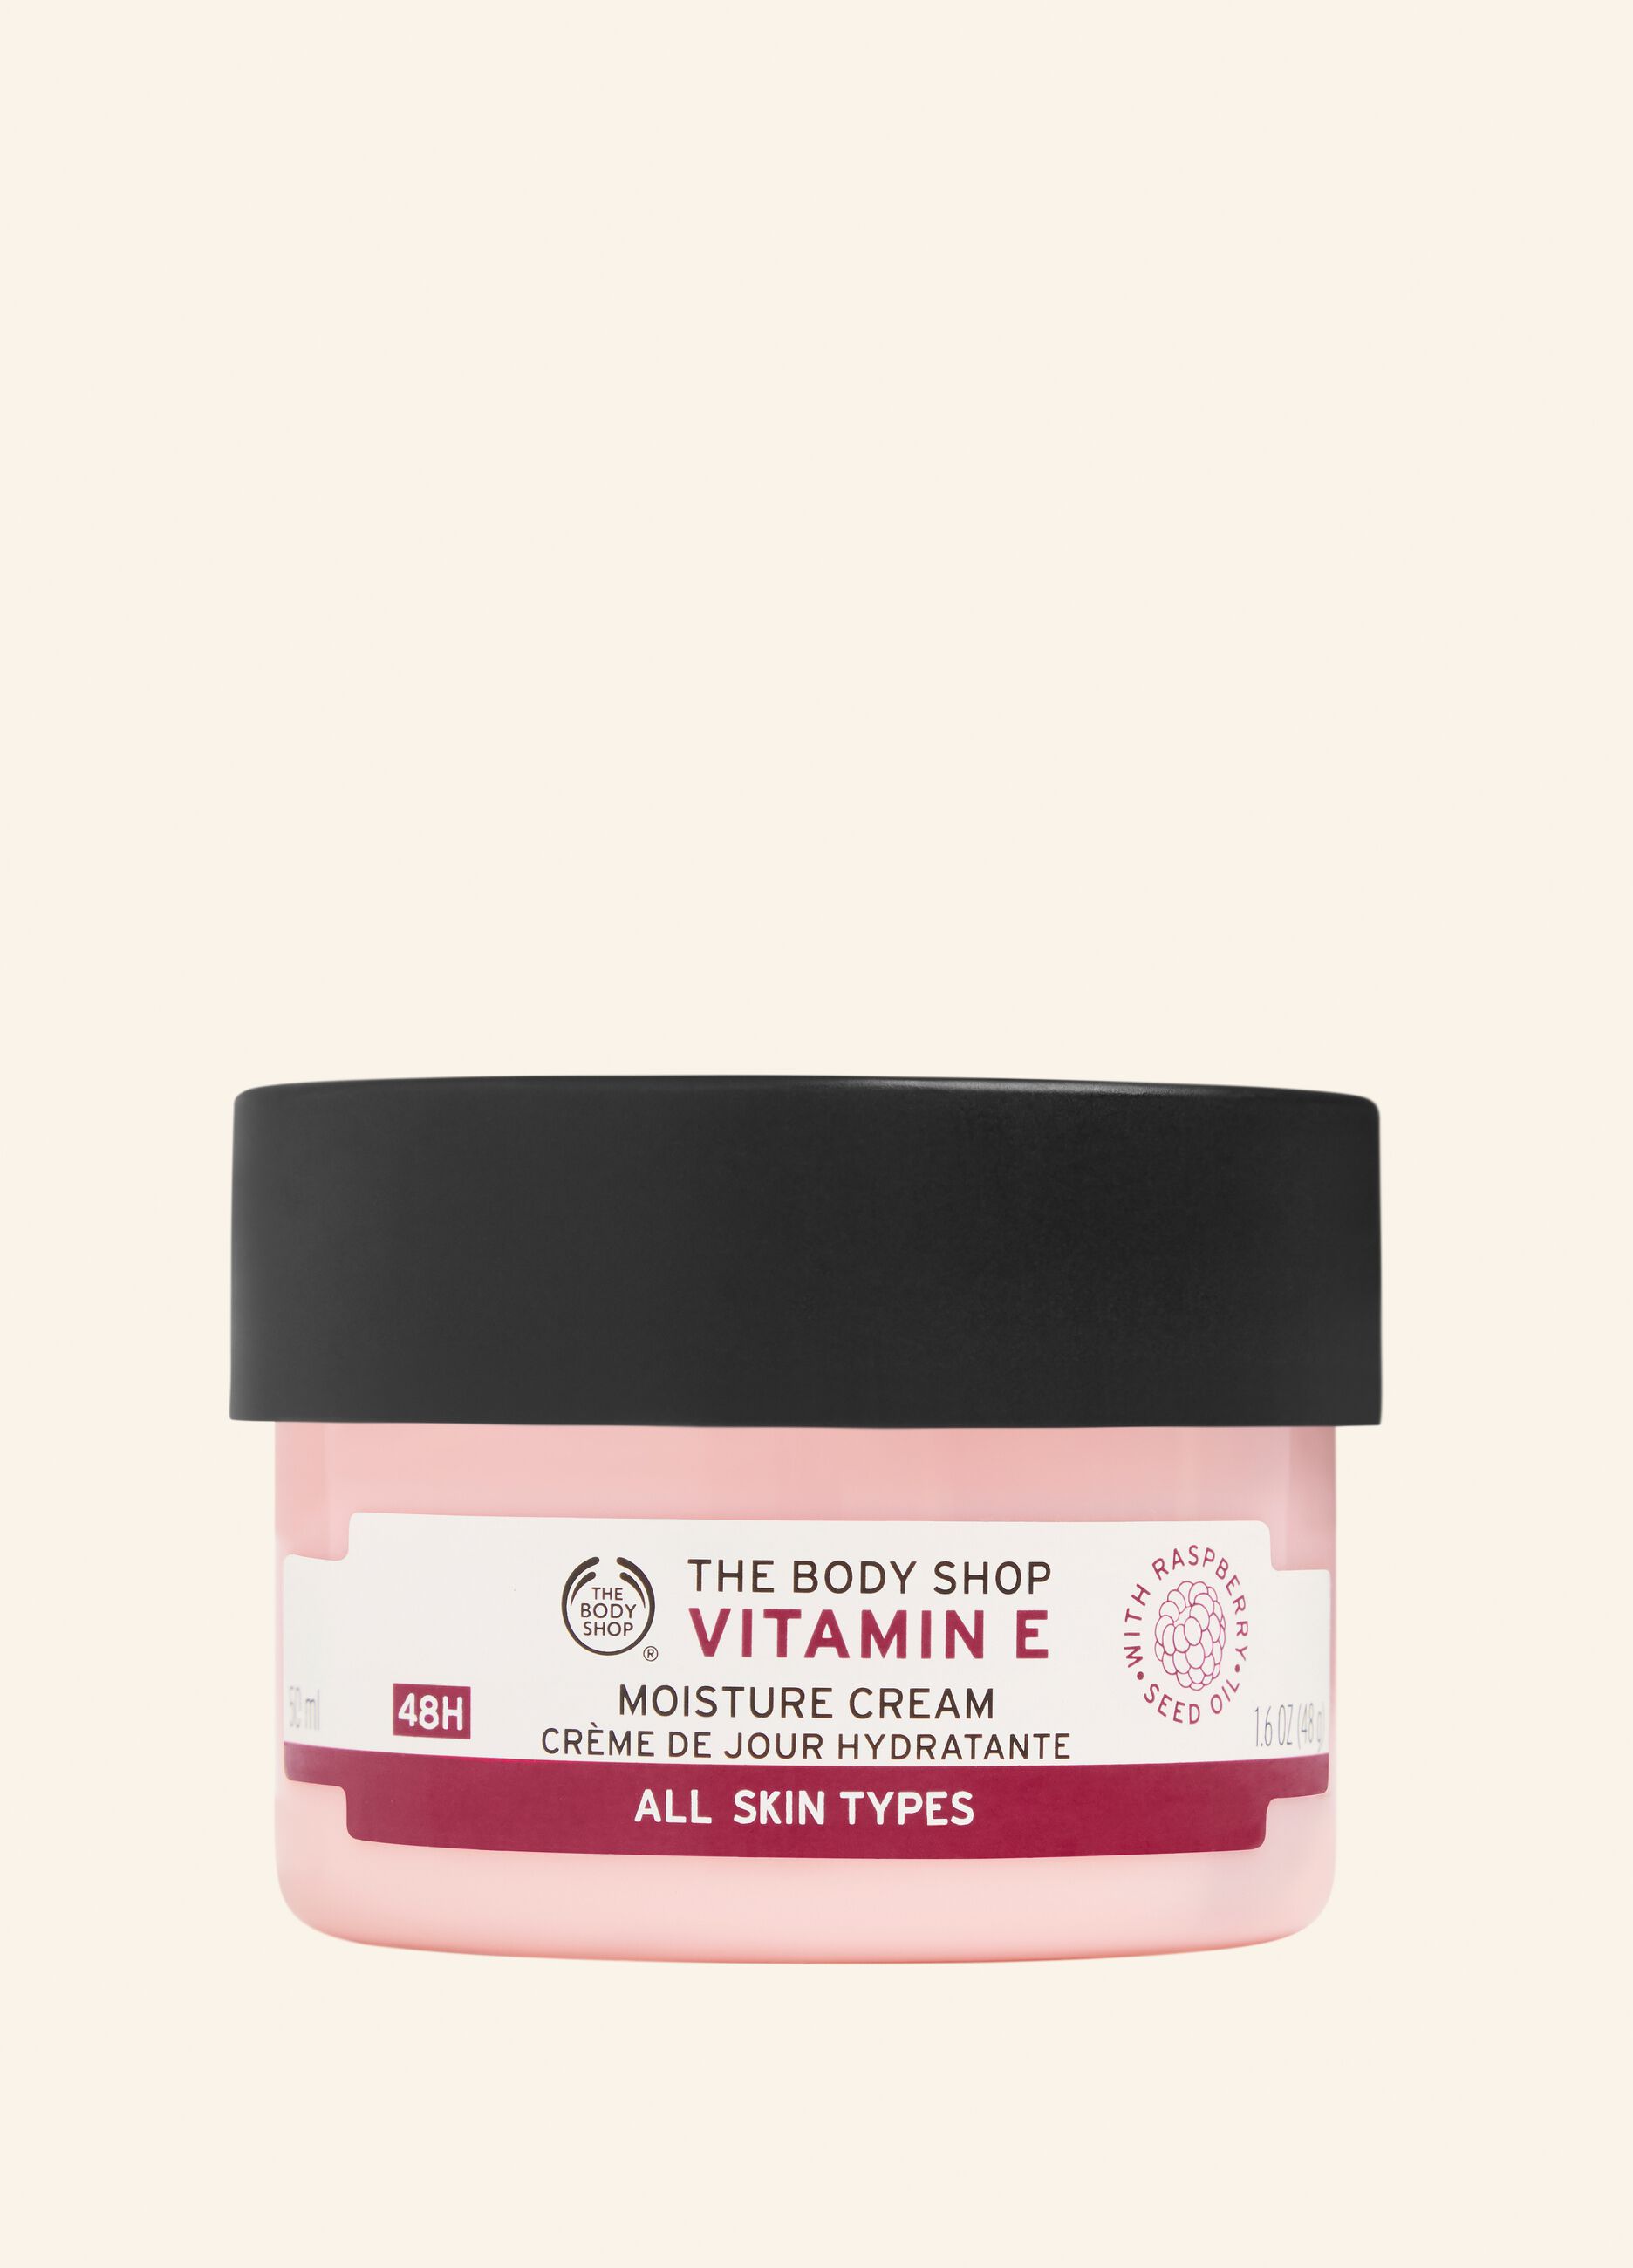 The Body Shop moisturising cream with vitamin E 50ml